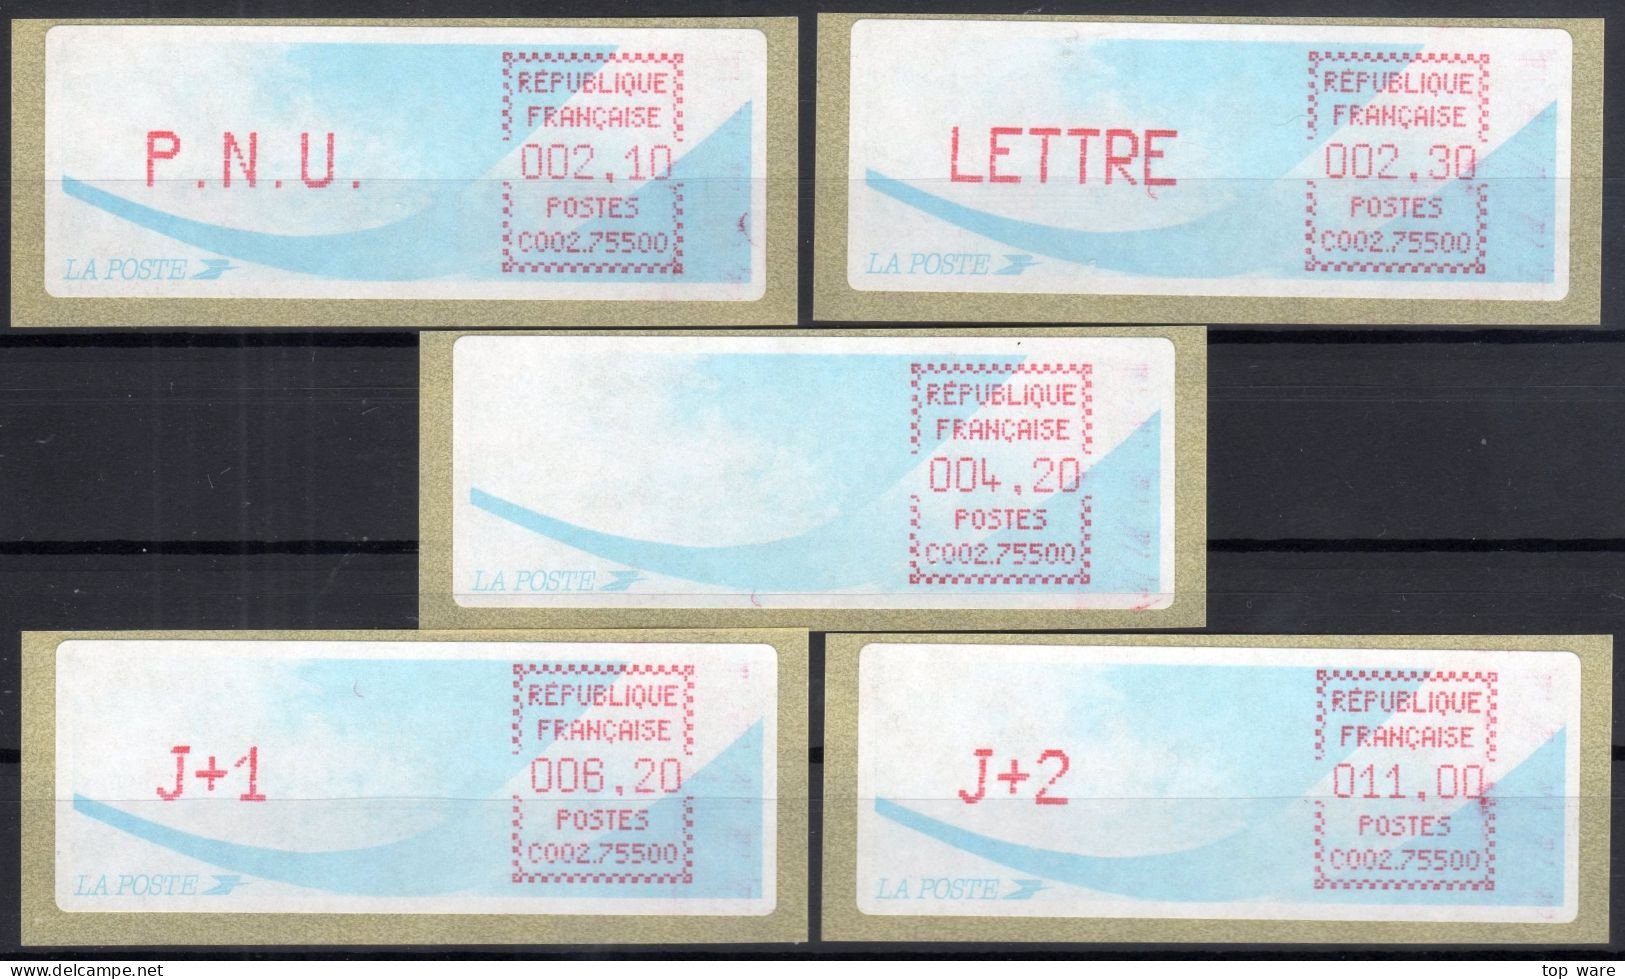 Frankreich France ATM Stamps LSA C002.75500 Paris RP / Michel 9.12 B / Serie ZS5 ** / Distributeurs Automatenmarken - 1988 Type « Comète »